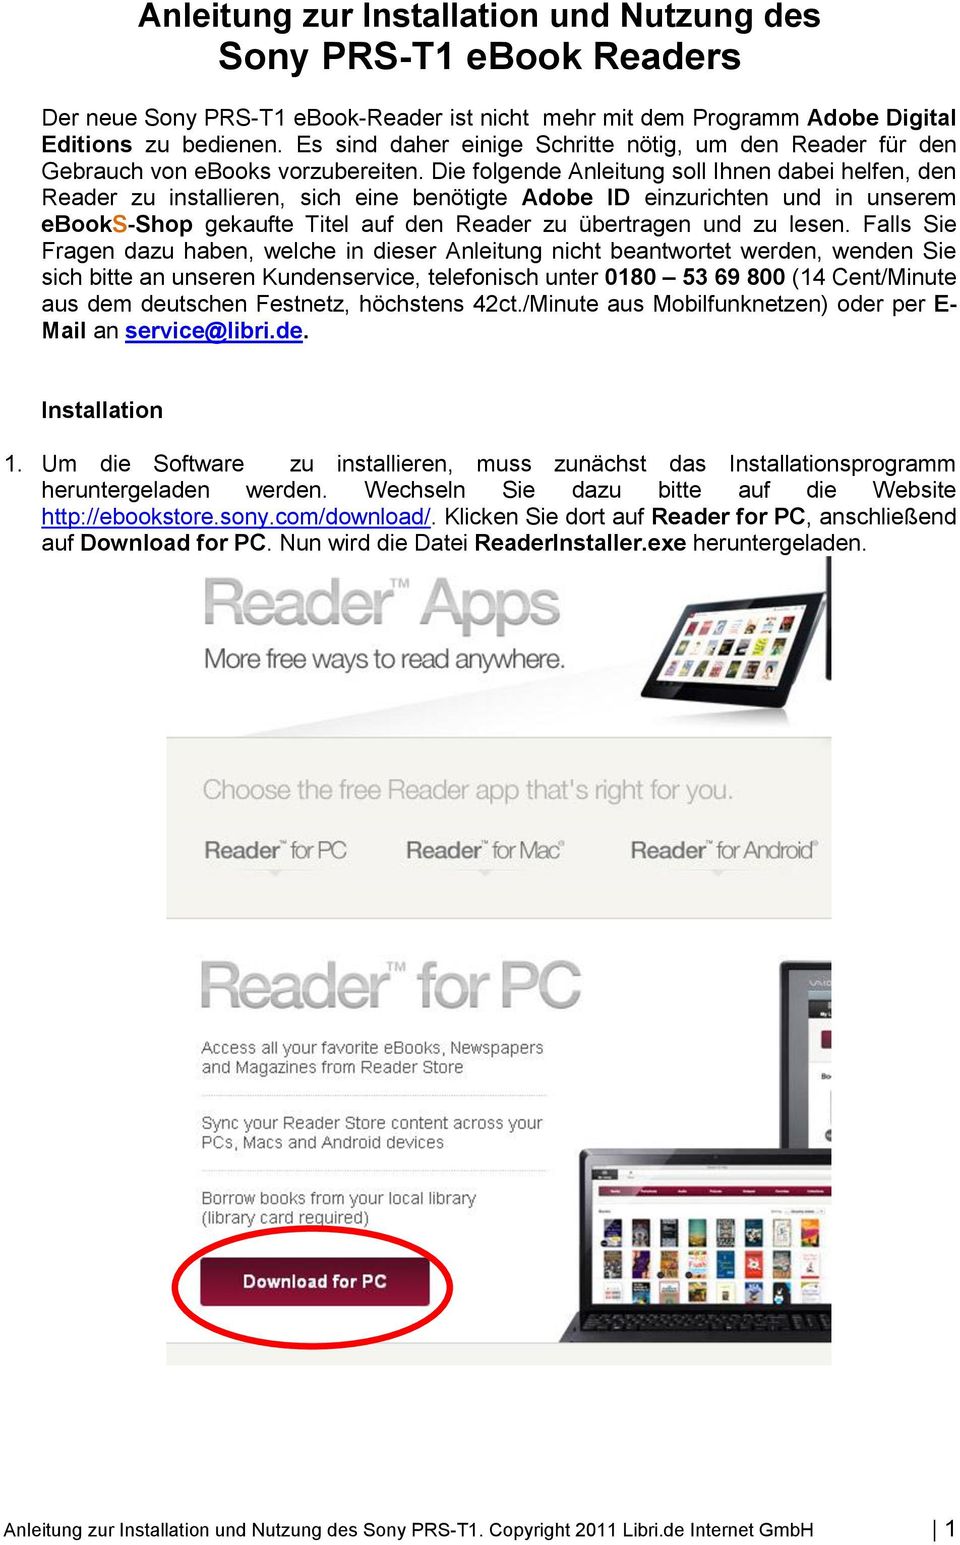 Die folgende Anleitung soll Ihnen dabei helfen, den Reader zu installieren, sich eine benötigte Adobe ID einzurichten und in unserem ebooks-shop gekaufte Titel auf den Reader zu übertragen und zu